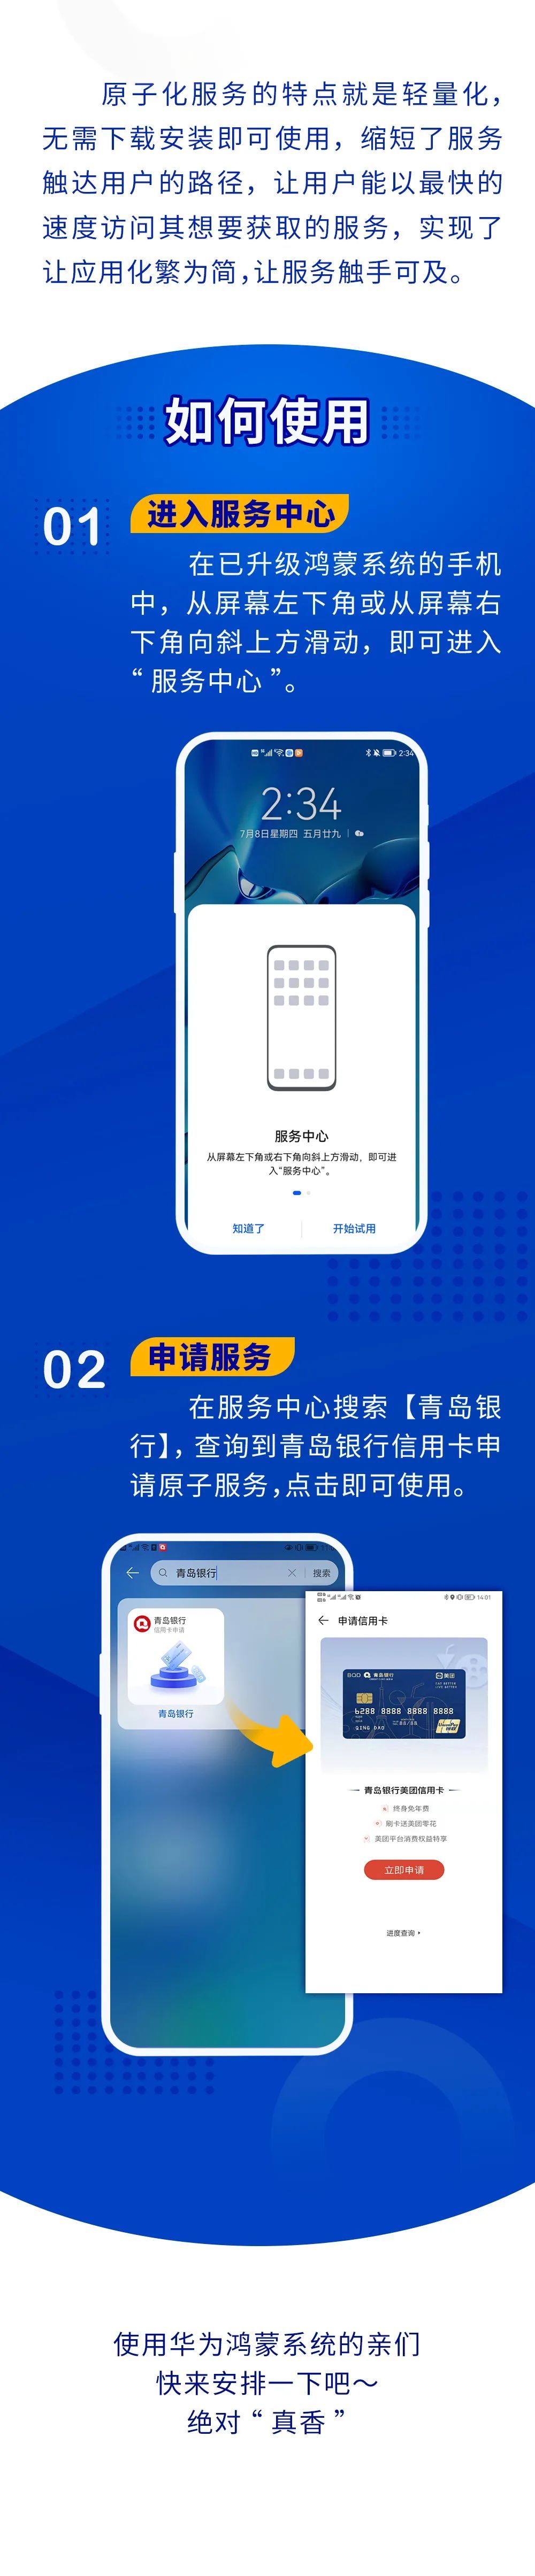 化繁为简   触手可及，青岛银行正式推出鸿蒙2.0系统原子化服务